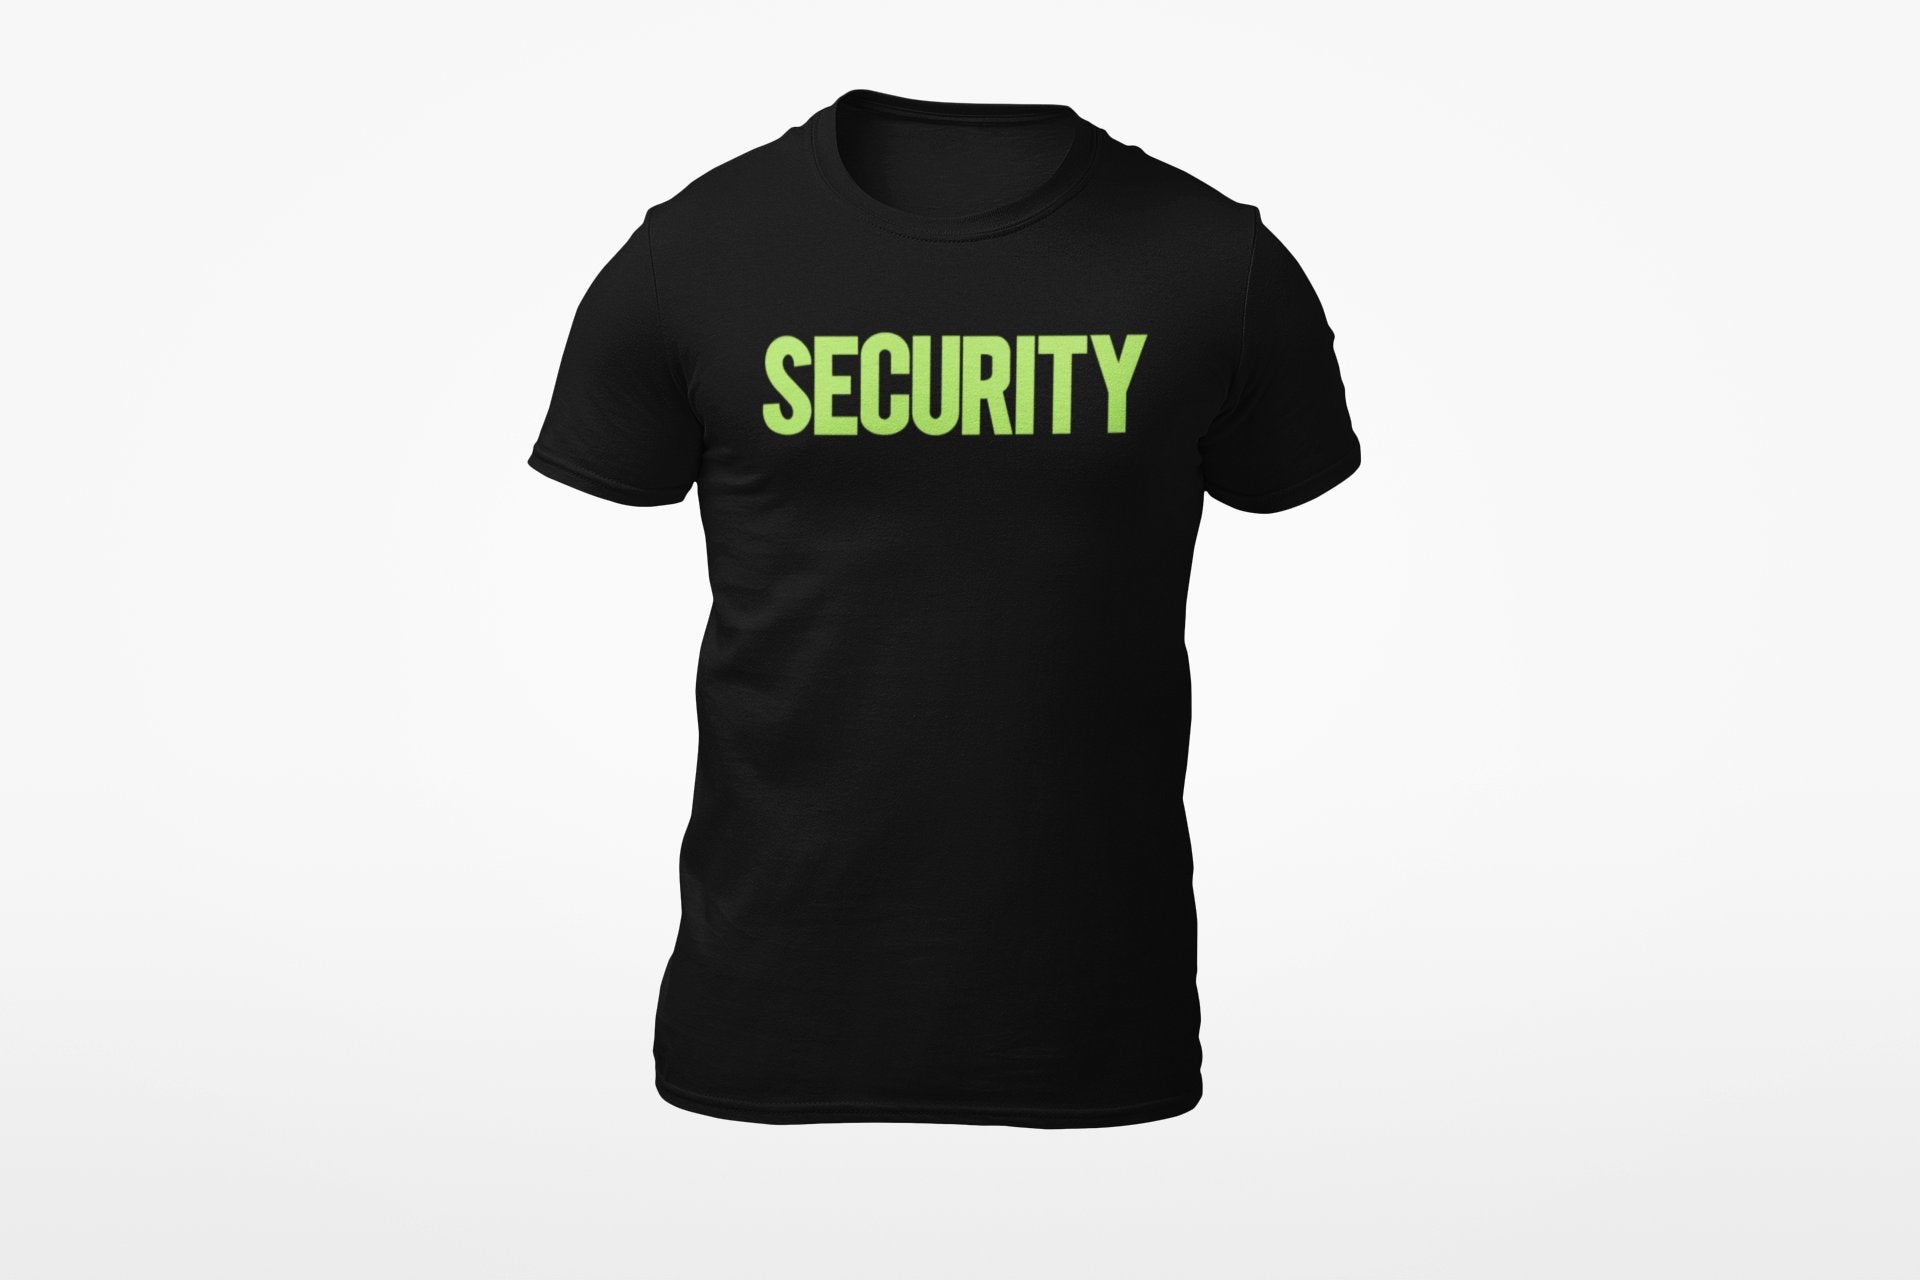 T-shirt de sécurité pour hommes (conception solide, imprimé avant et arrière, noir et néon)